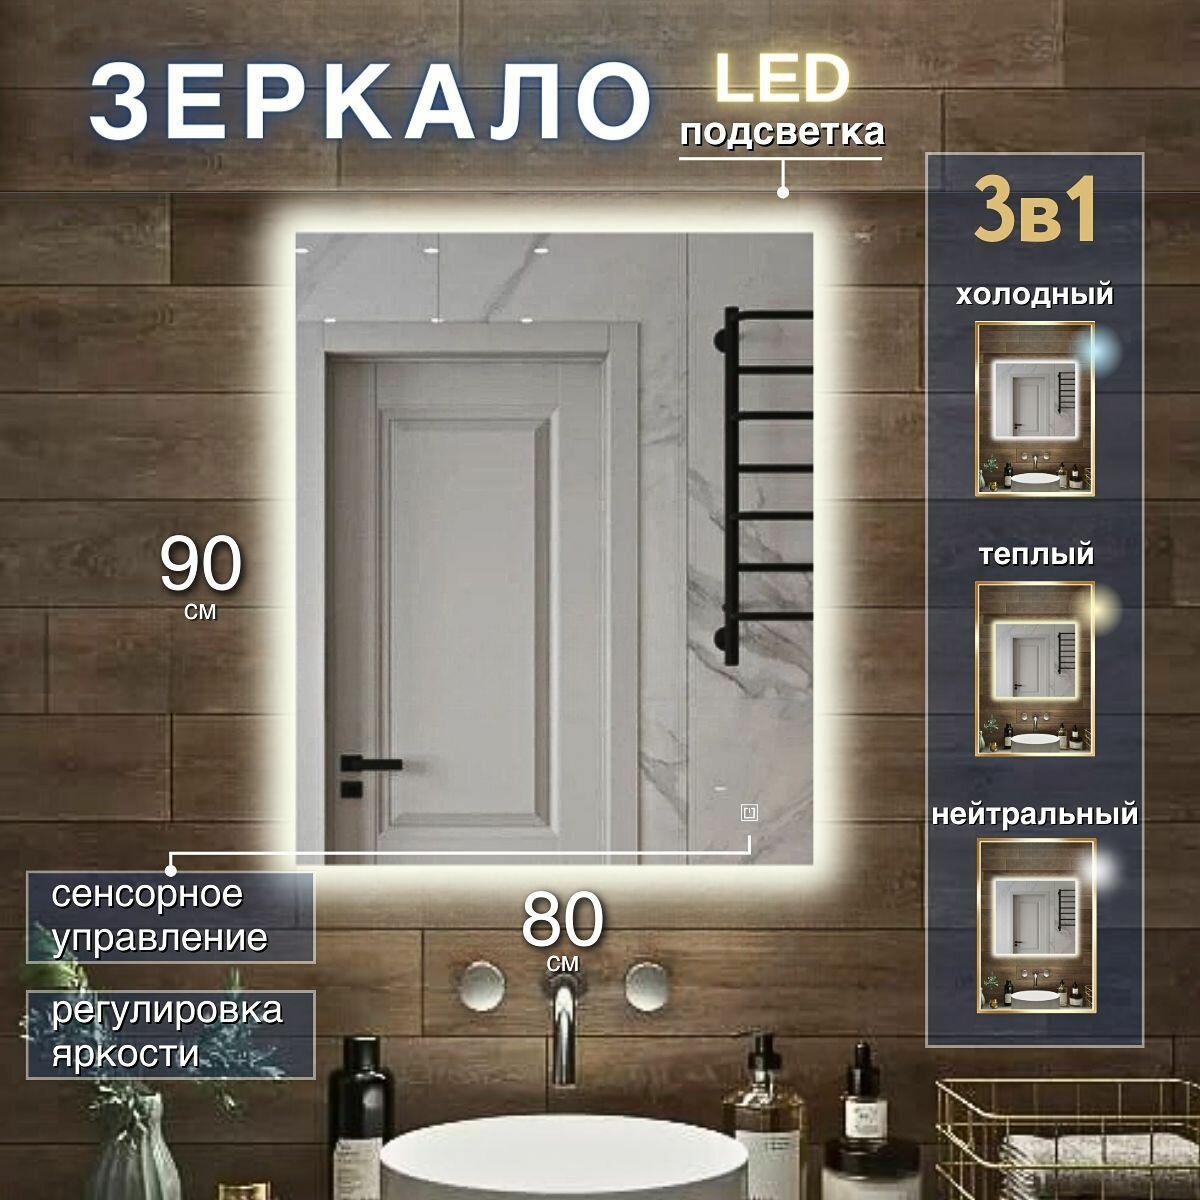 Зеркало с подсветкой 3 в 1 для ванной прямоугольное с сенсорным управлением и регулировкой яркости 80 на 90 см